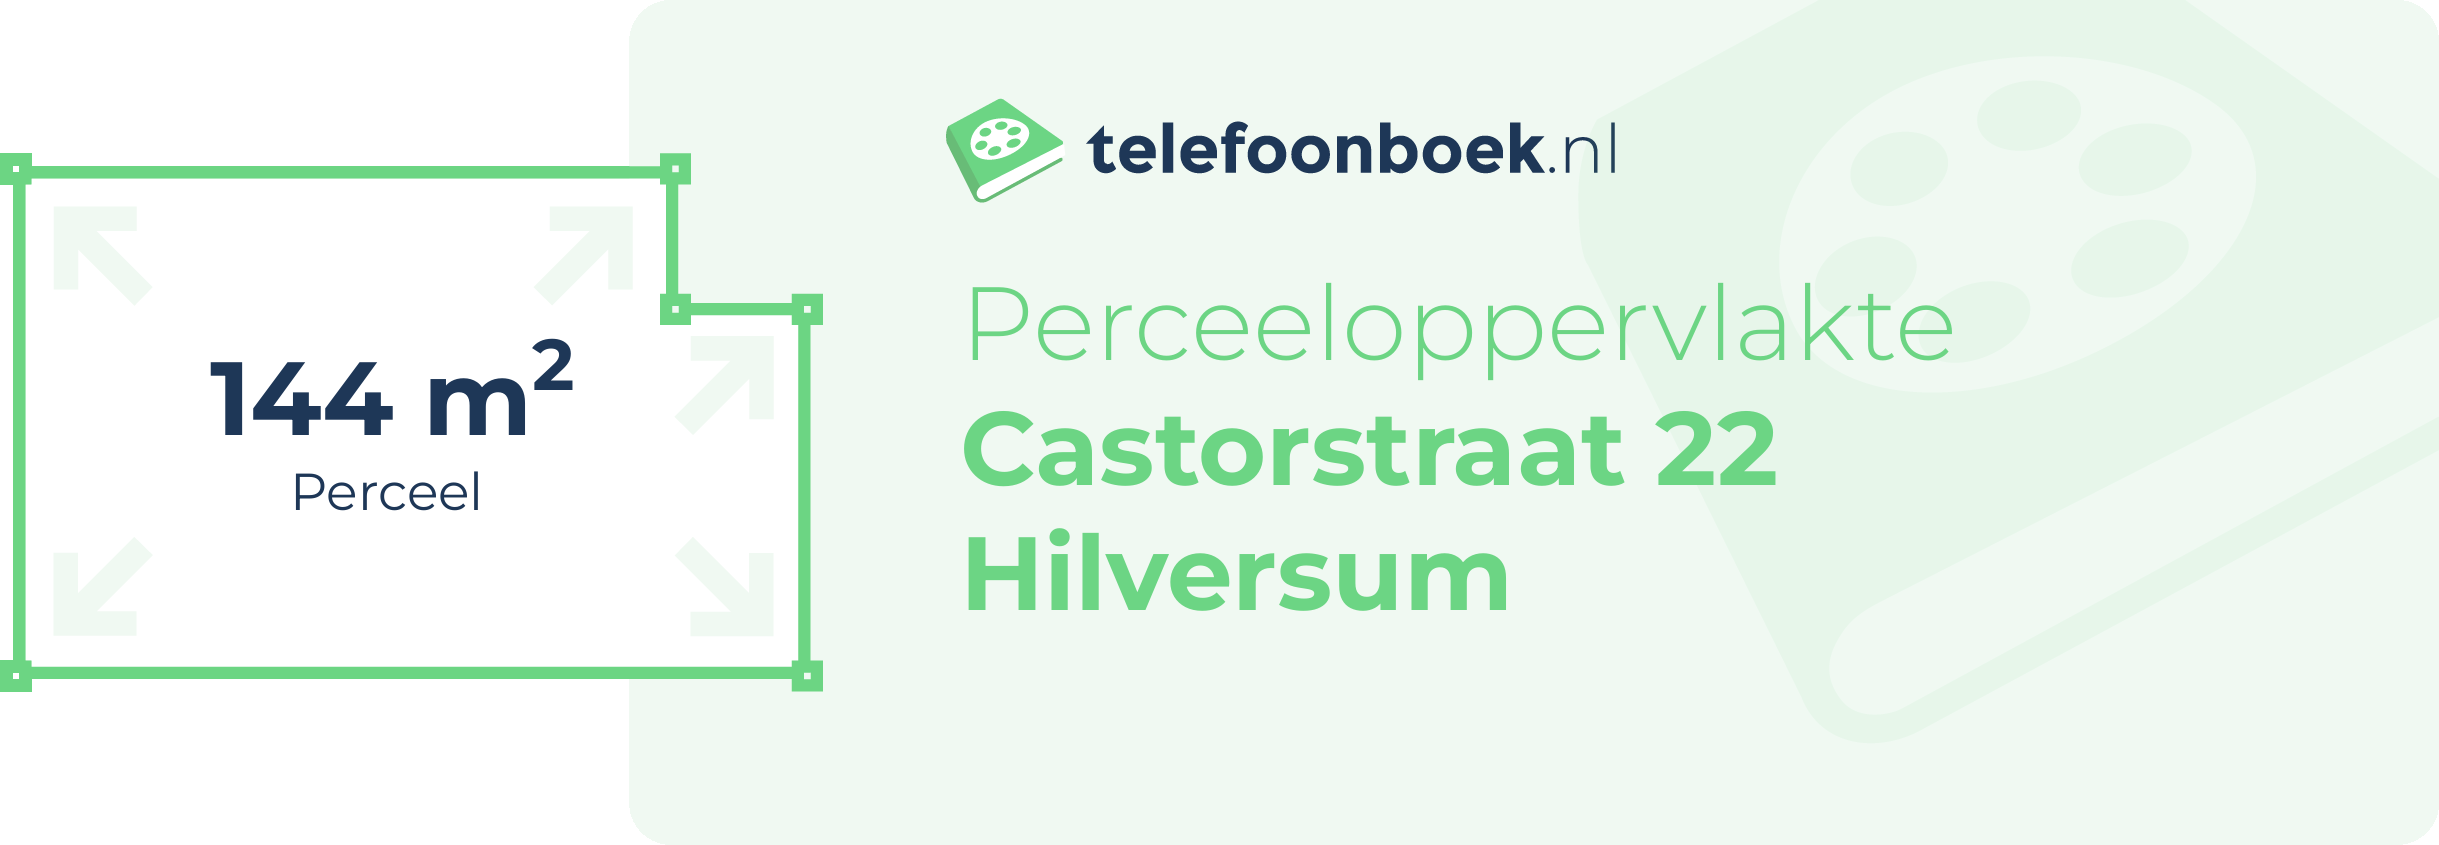 Perceeloppervlakte Castorstraat 22 Hilversum